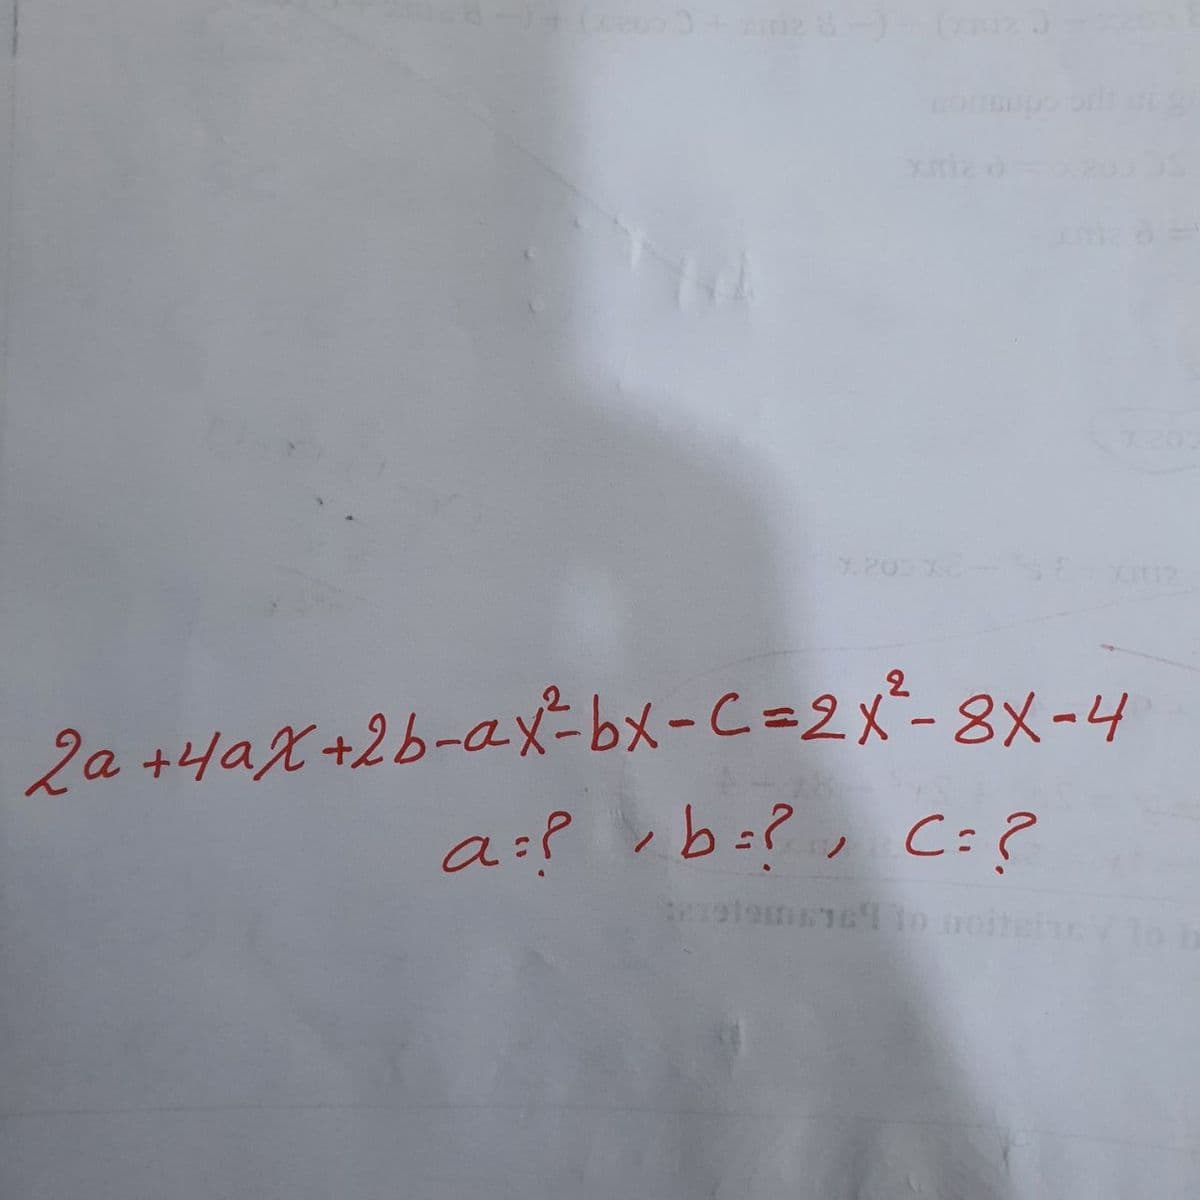 Y.200X
2a +4aX+2b-ax-bx-C=D2x²-8X-4
a:? ,b=?, C:?
